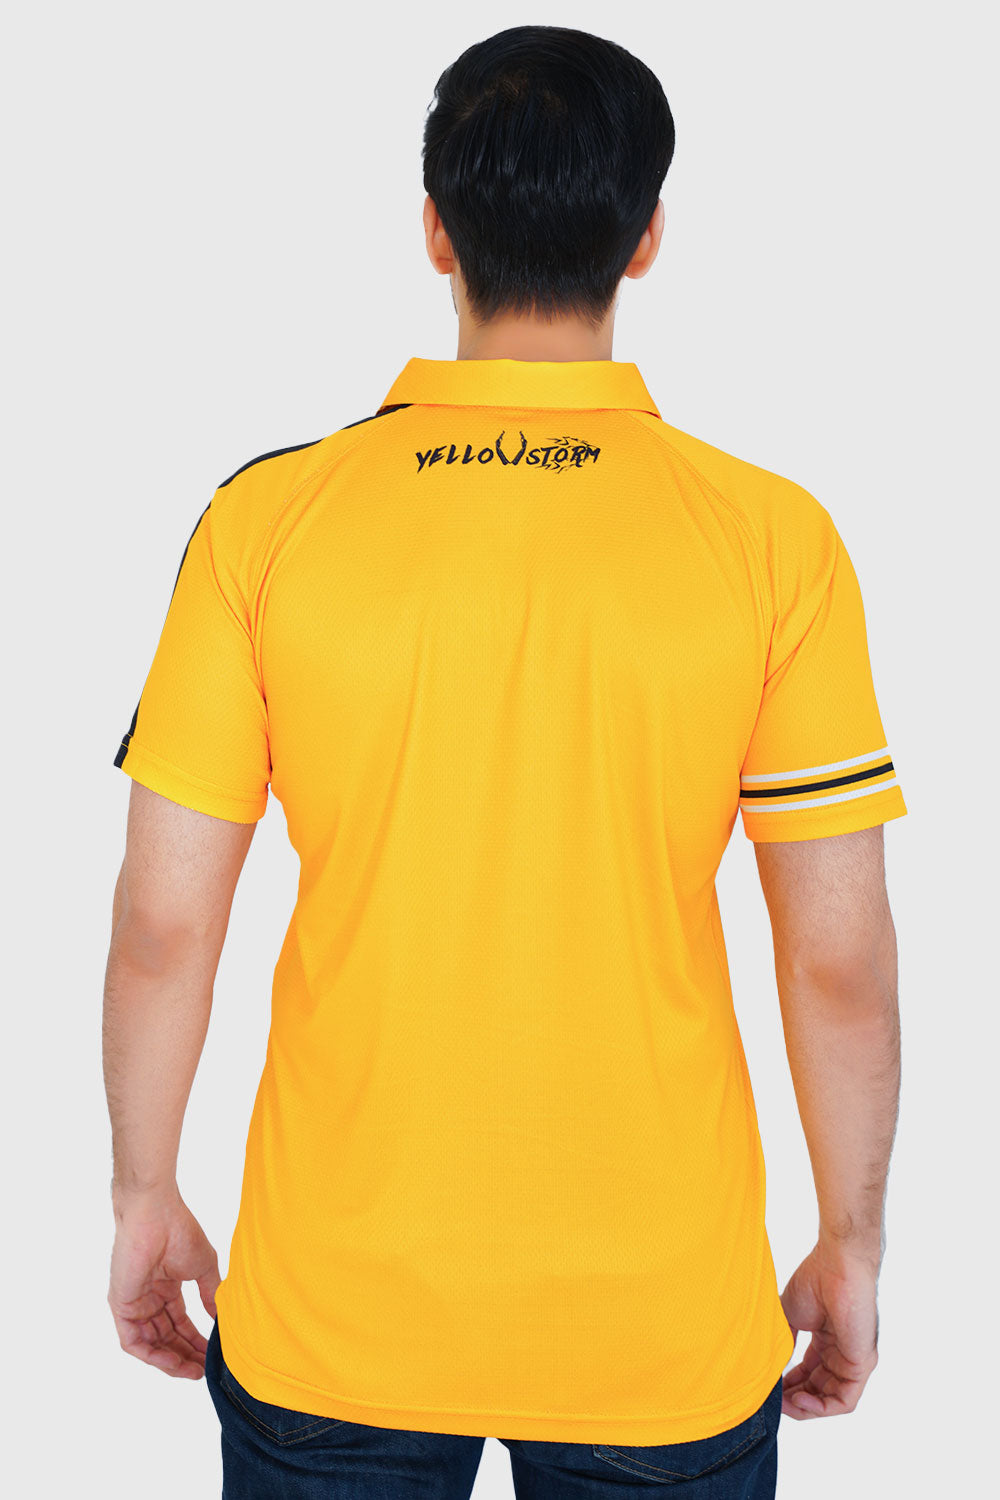 ZALMI Premium Polo Shirt (Yellow)